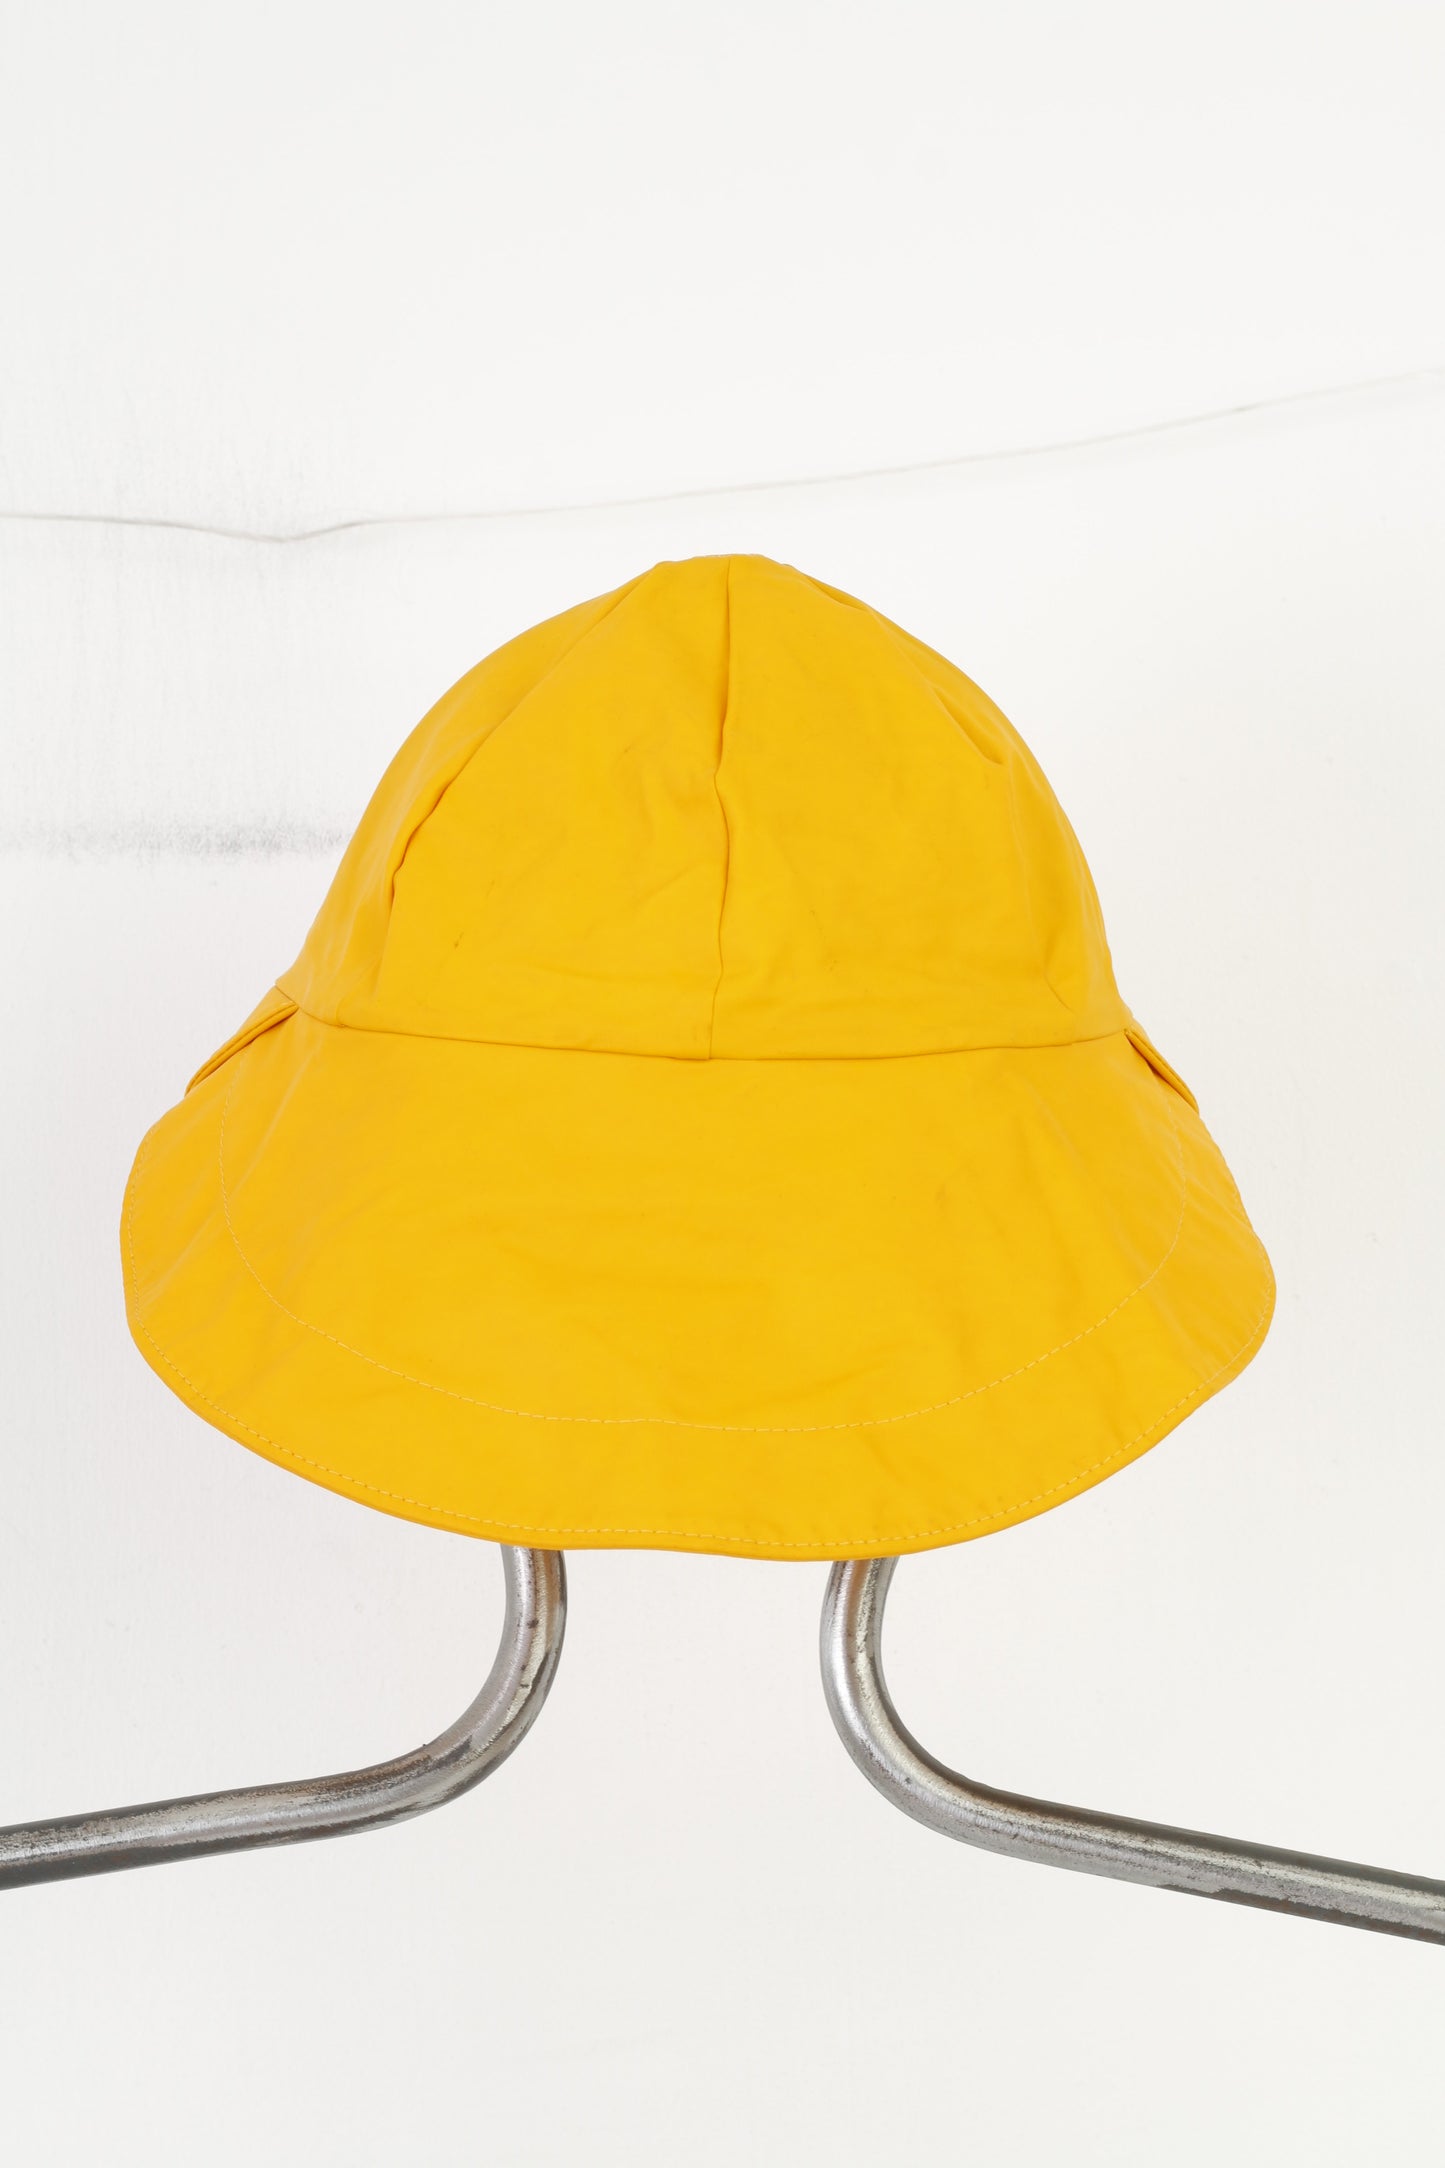 66 North Islande Ensemble imperméable 2XL pour homme avec chapeau, capuche jaune, fermeture éclair complète, poches en polyamide, haut imperméable vintage